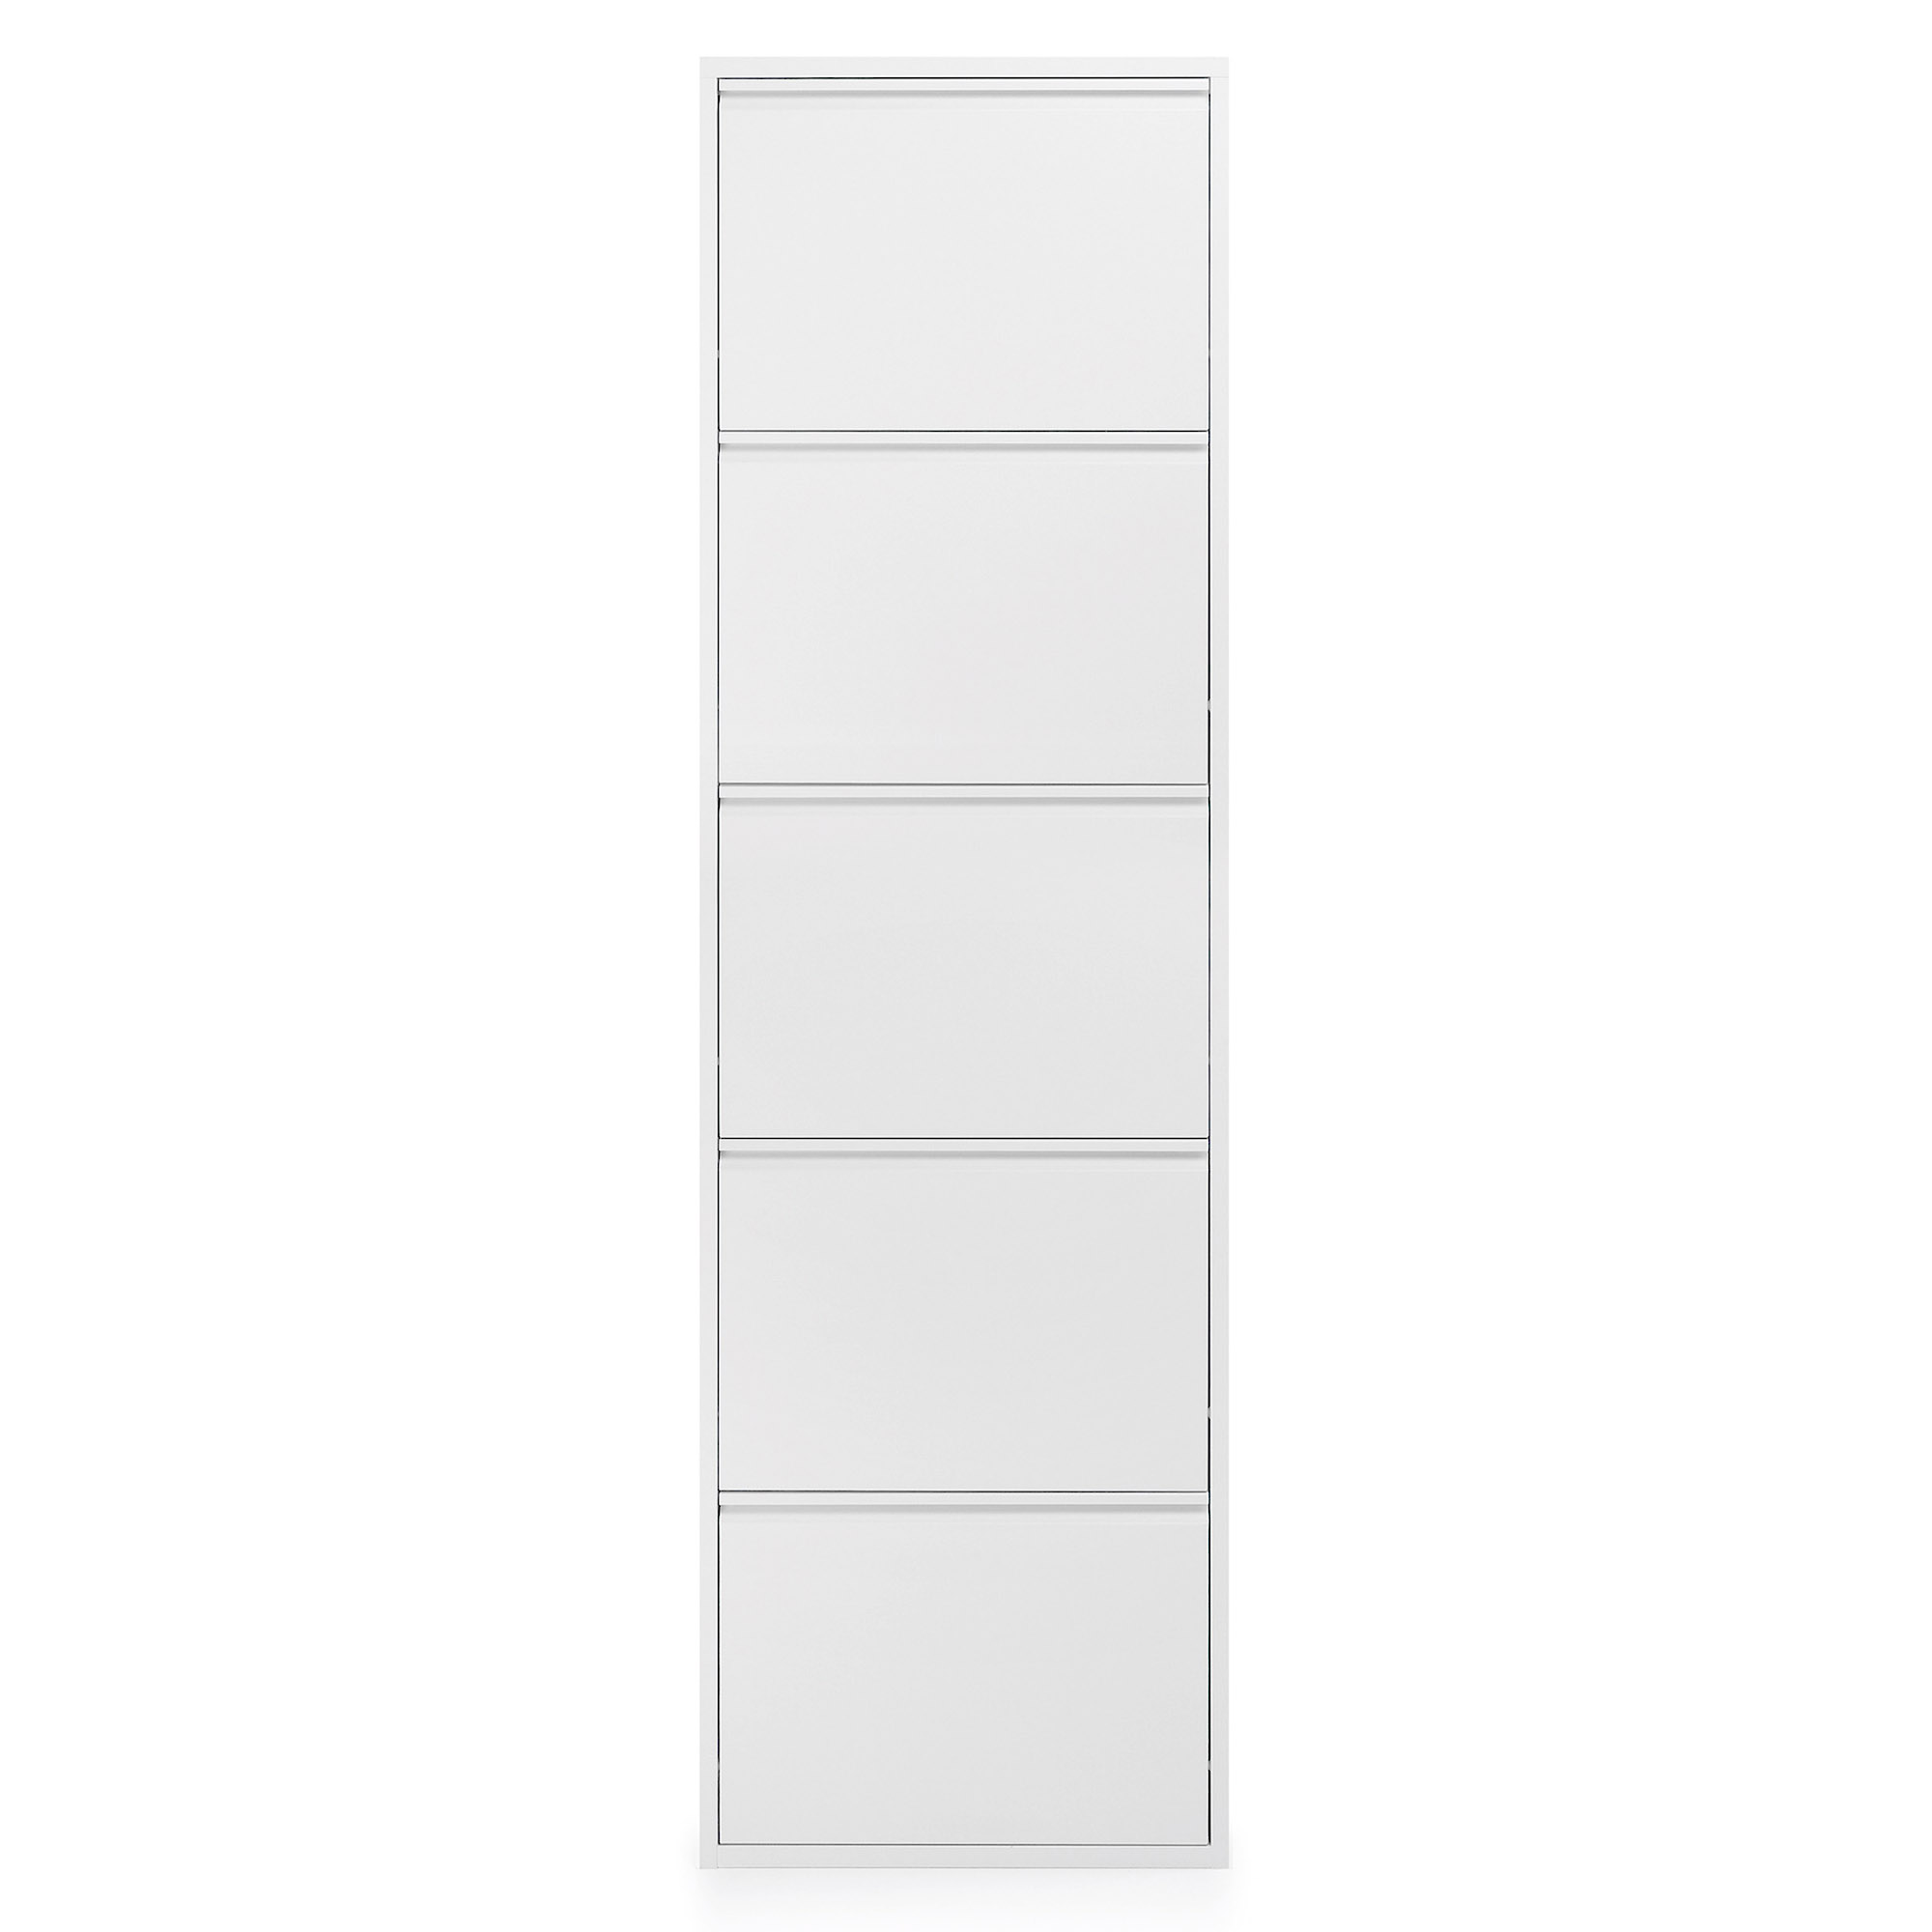 LAFORMA Ode skoskab, m. 5 låger - hvid stål (50x168,5)